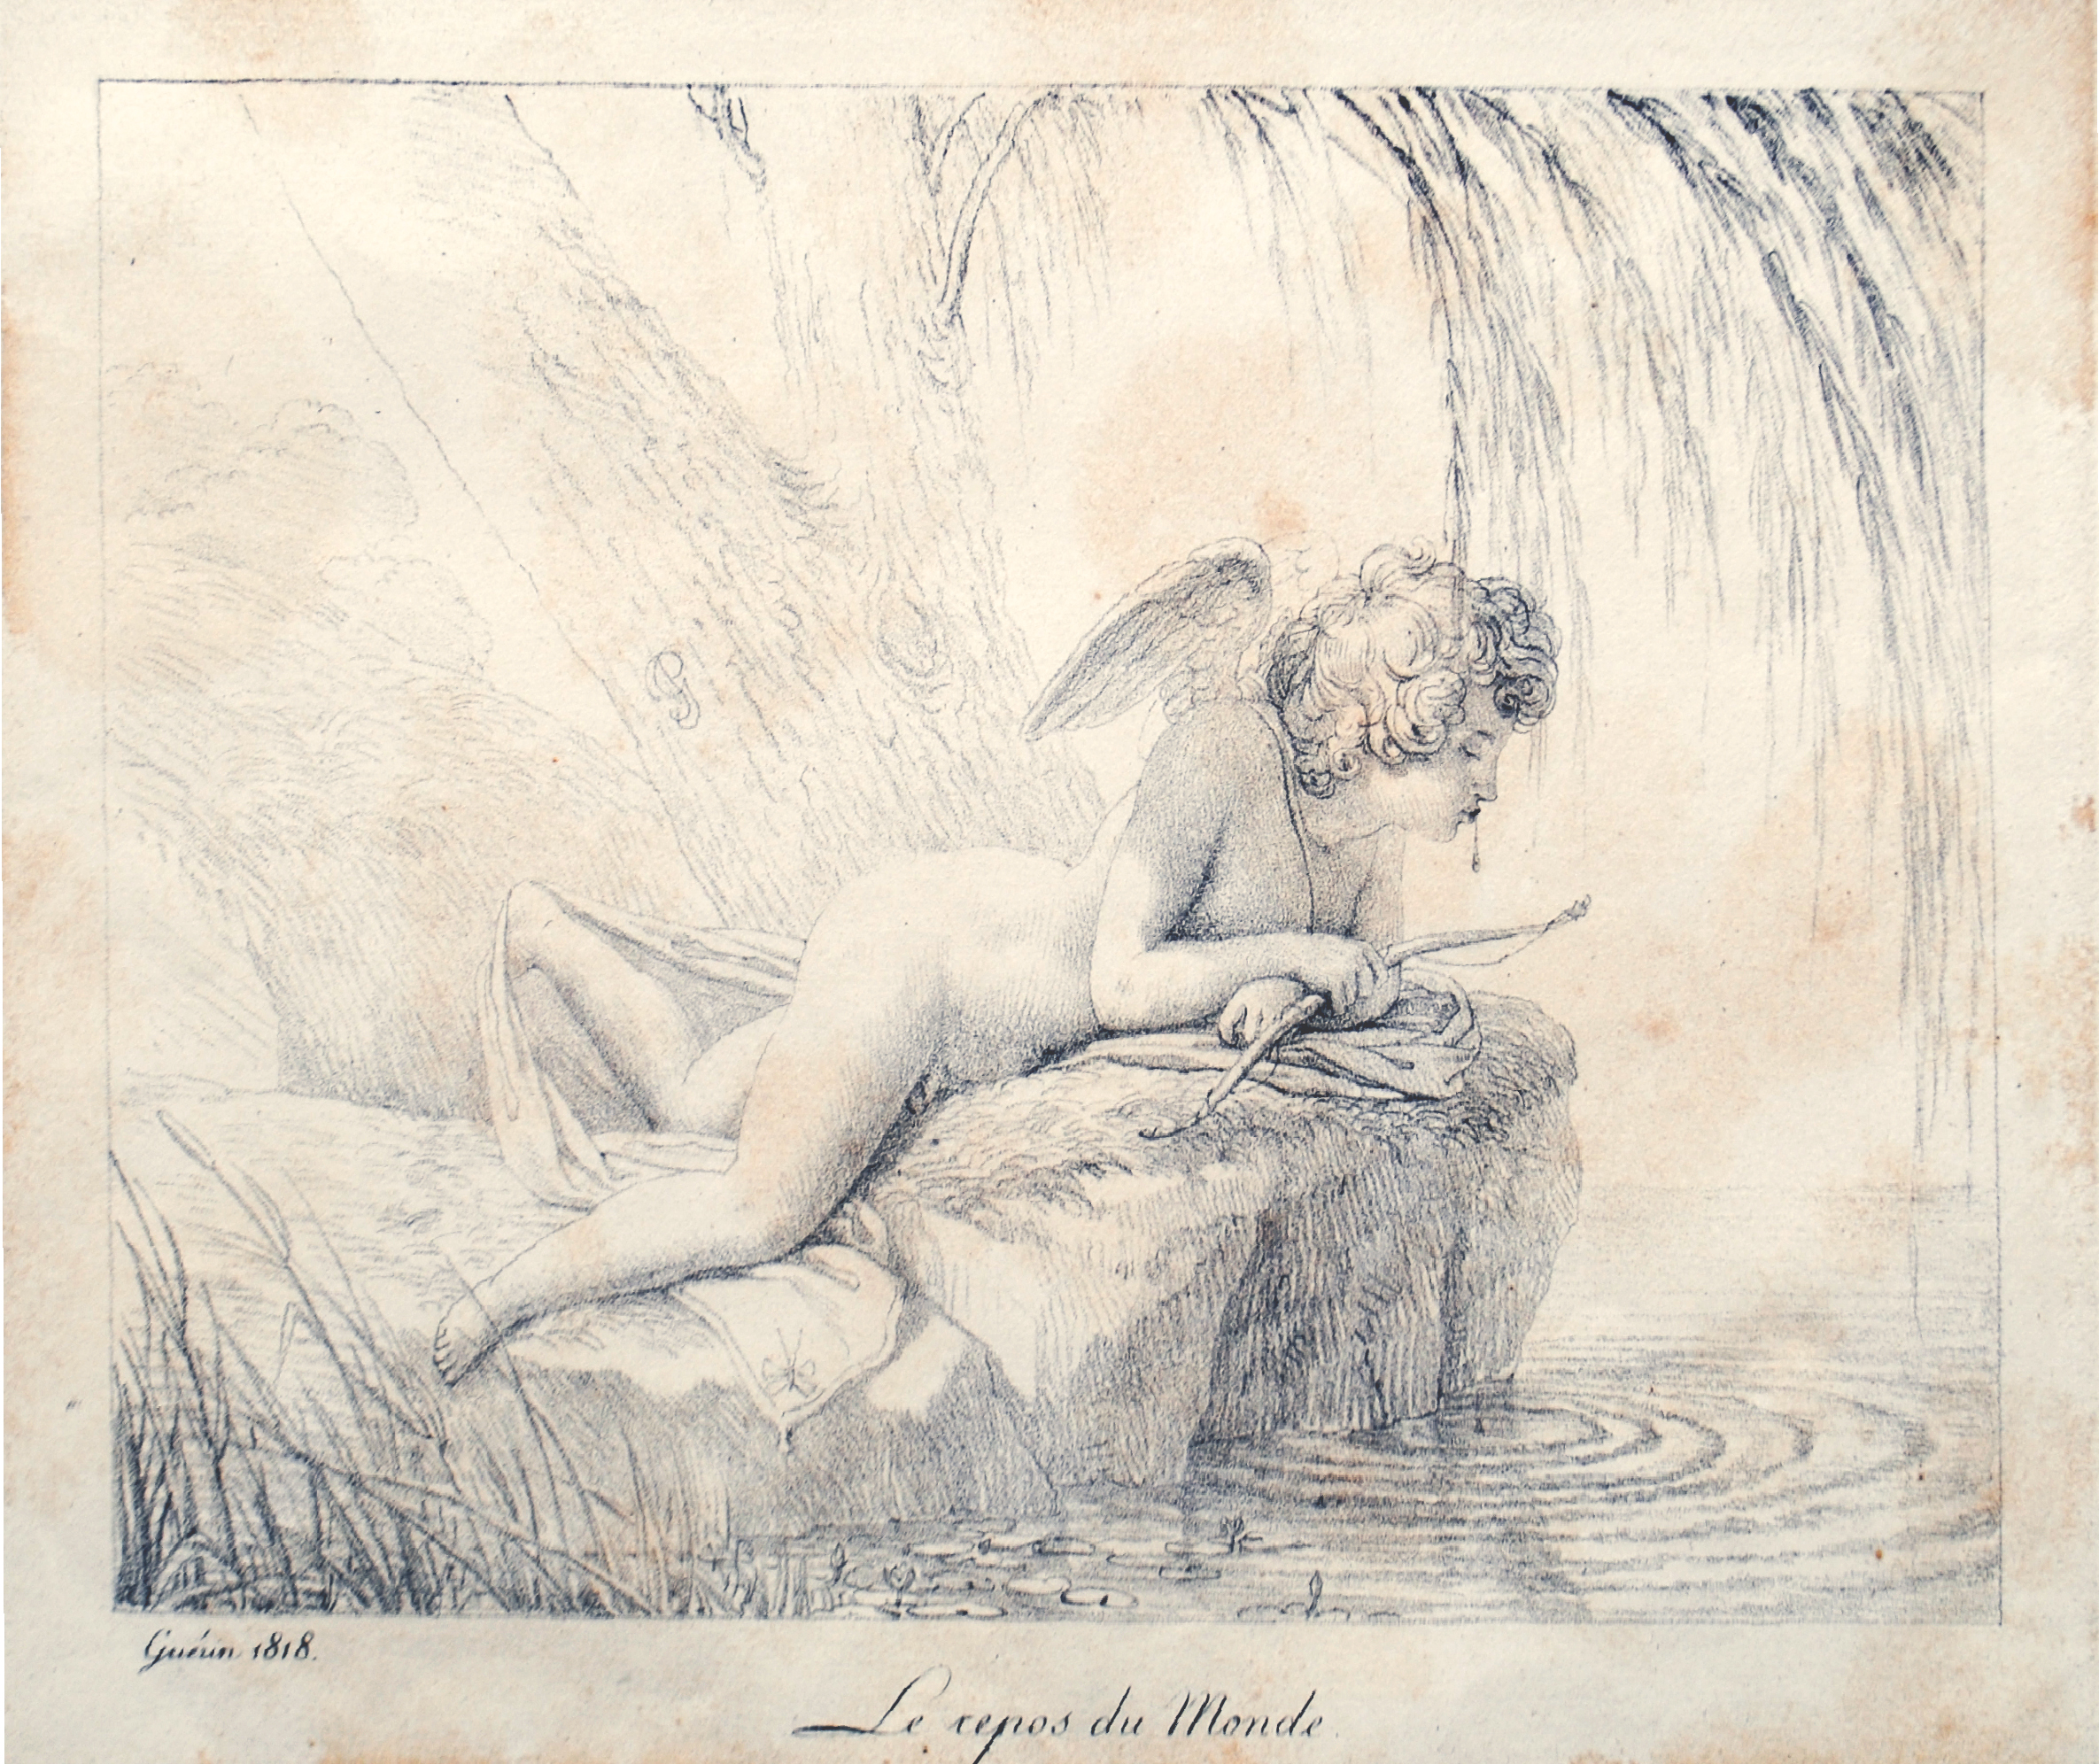 Pierre-Narcisse Guérin, Le Repos du Monde, lithograph, 1816